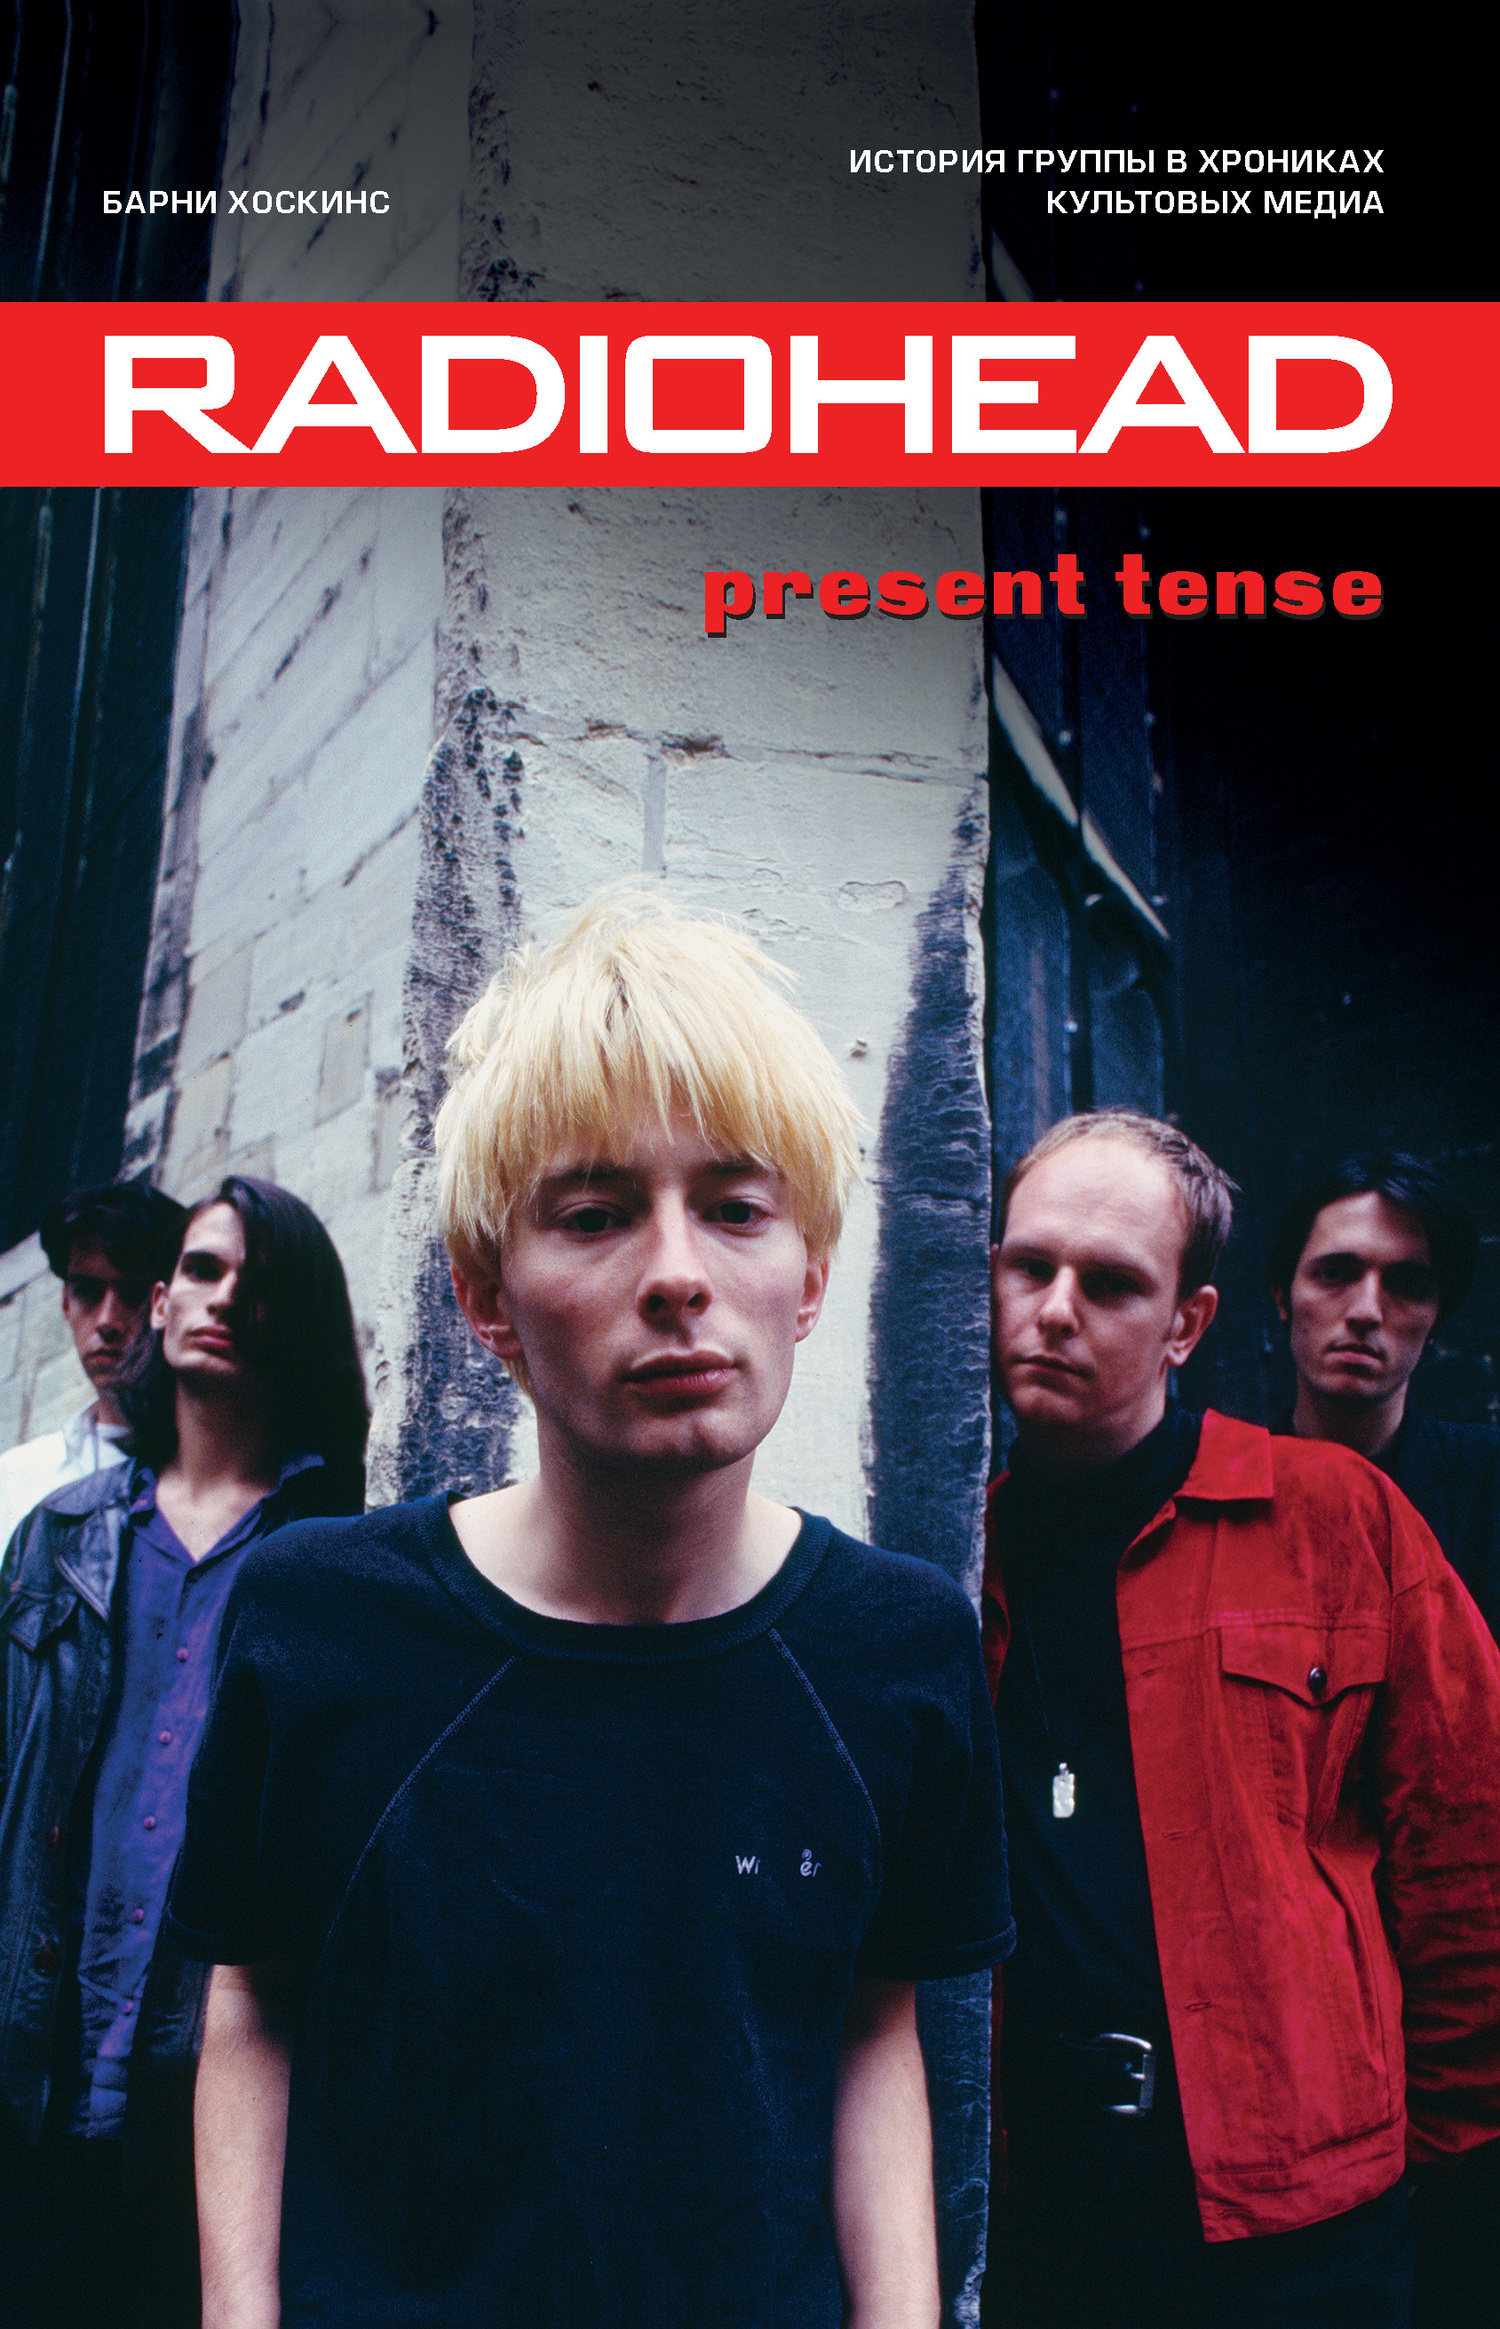 Хоскинс Барни - Radiohead. Present Tense. История группы в хрониках культовых медиа скачать бесплатно